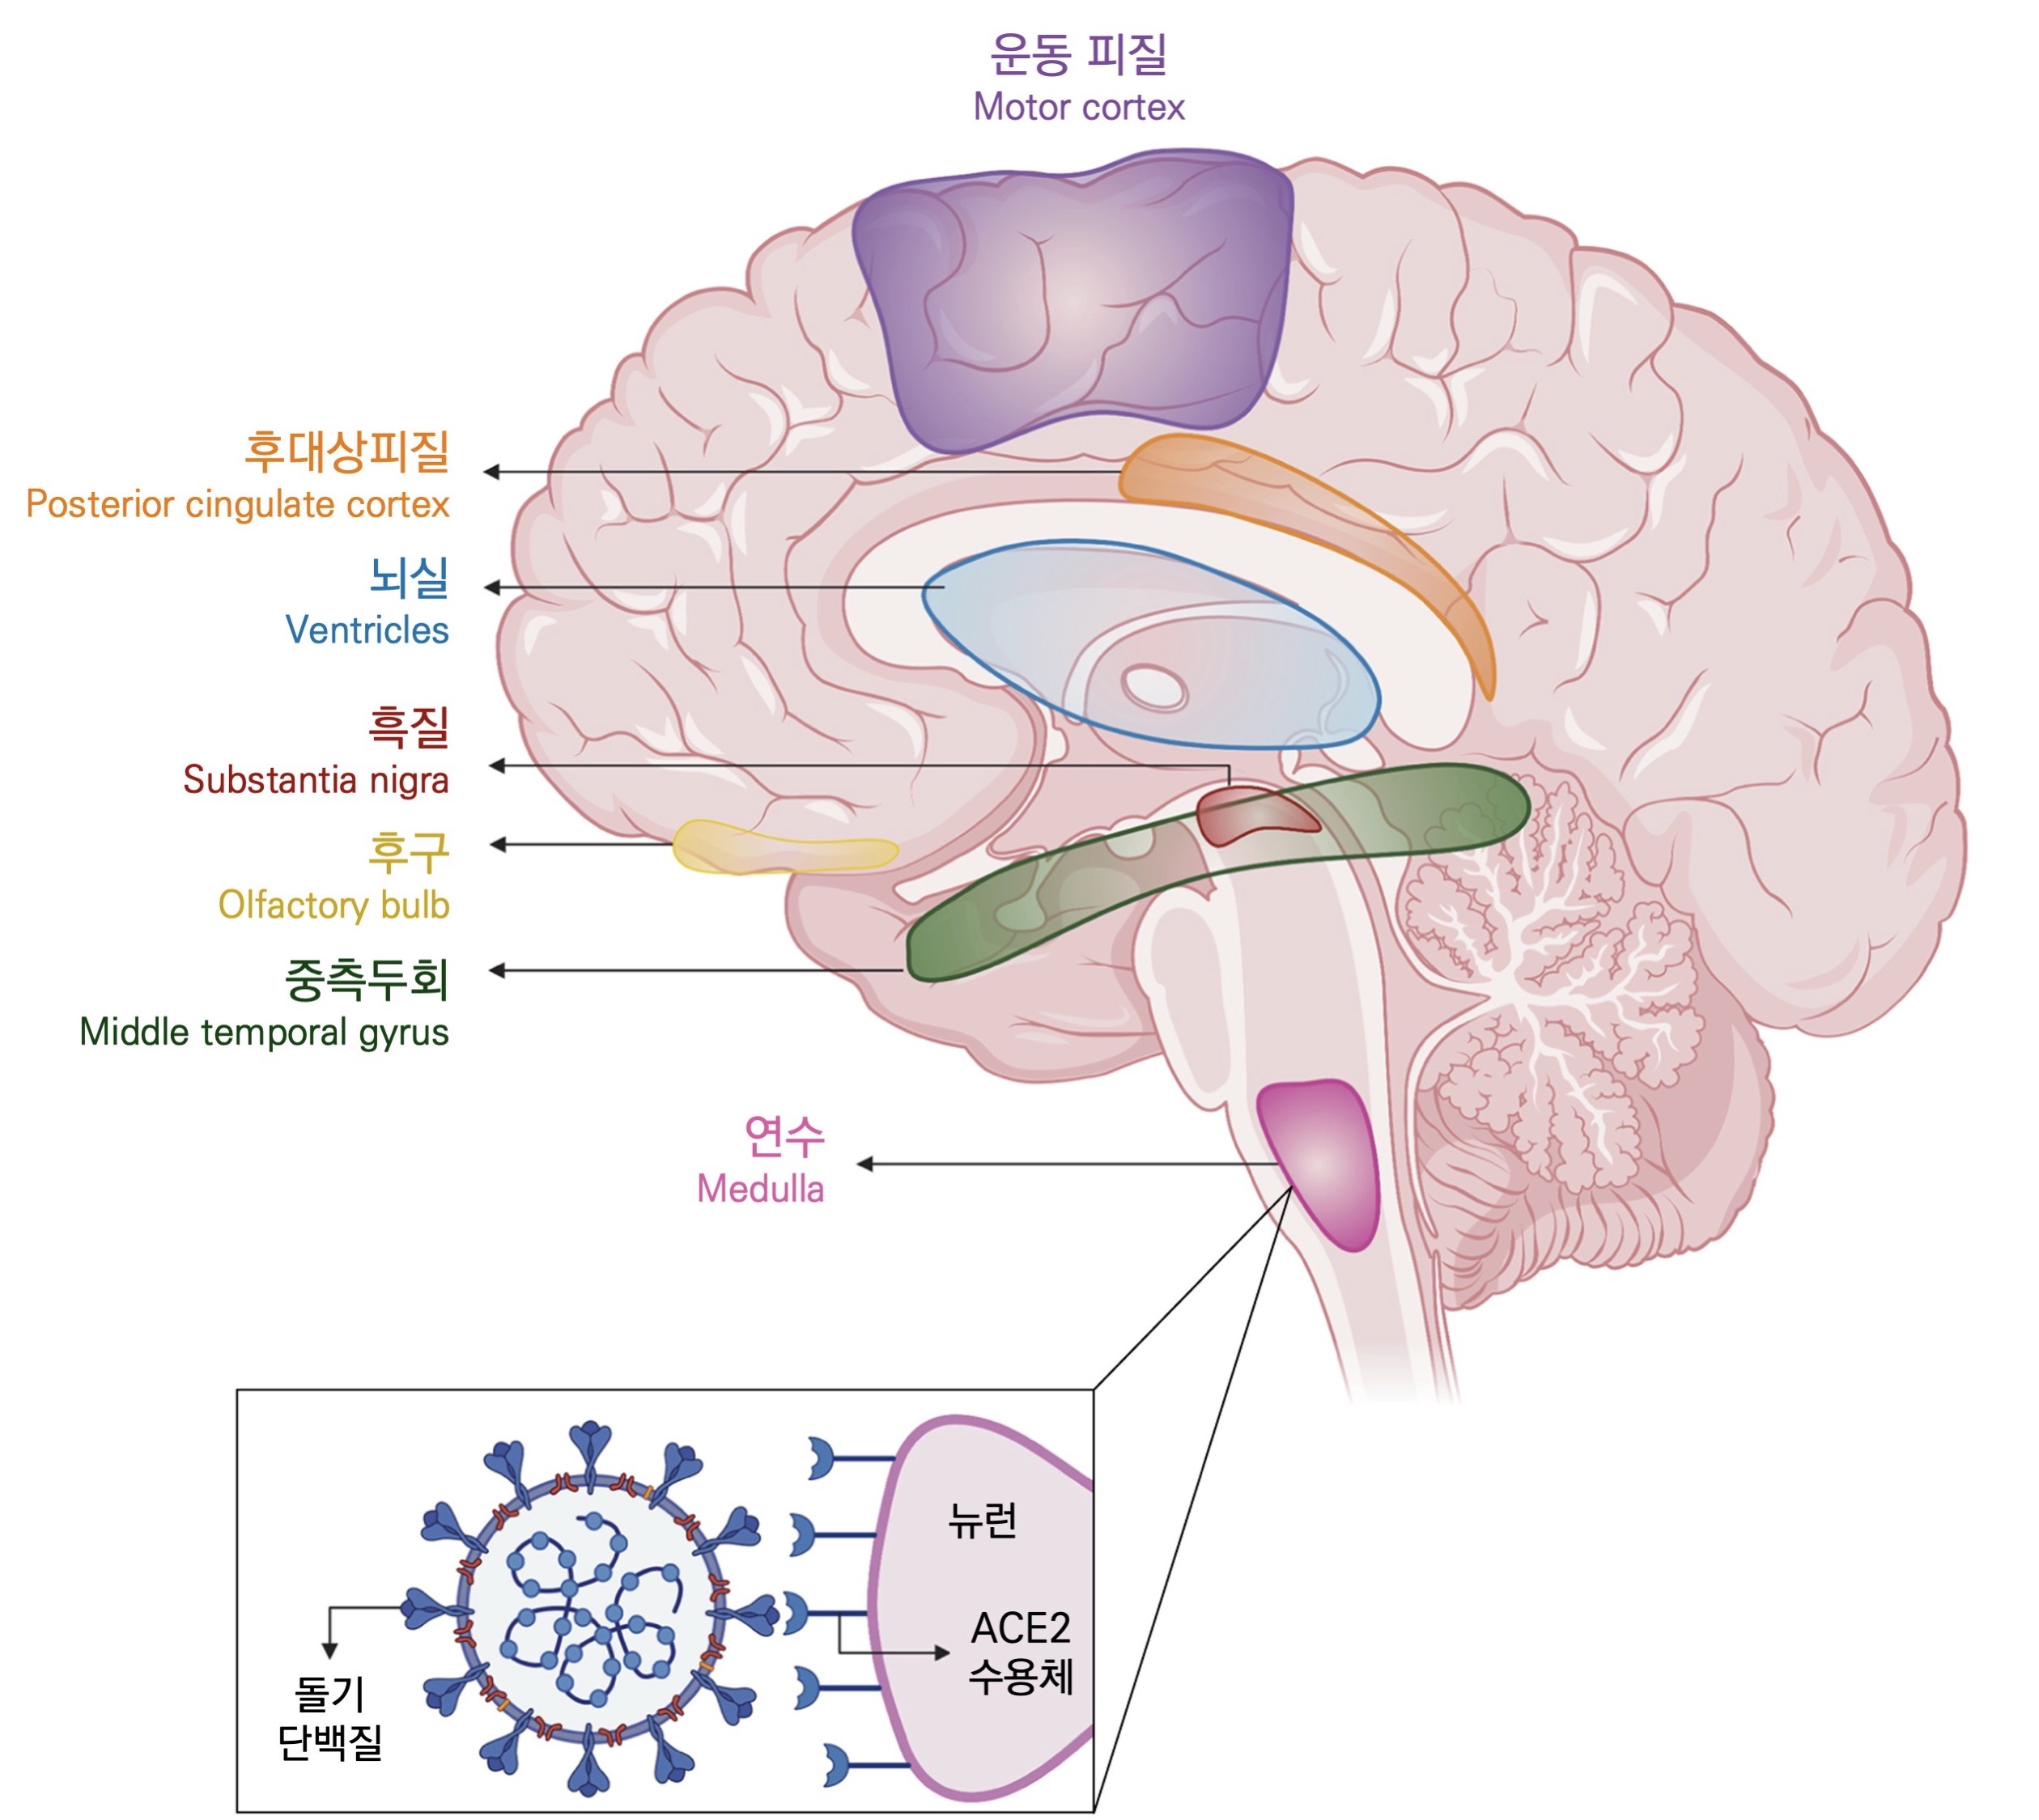 신경세포(뉴런)도 코로나의 돌기 단백질과 붙을 수 있는 ACE2 수용체를 갖고 있다. 아직 보고된 케이스는 적지만, 뇌도 코로나 바이러스가 침입할 수 있는 곳 중 하나이다. © Zubair, Adeel S., et al. 